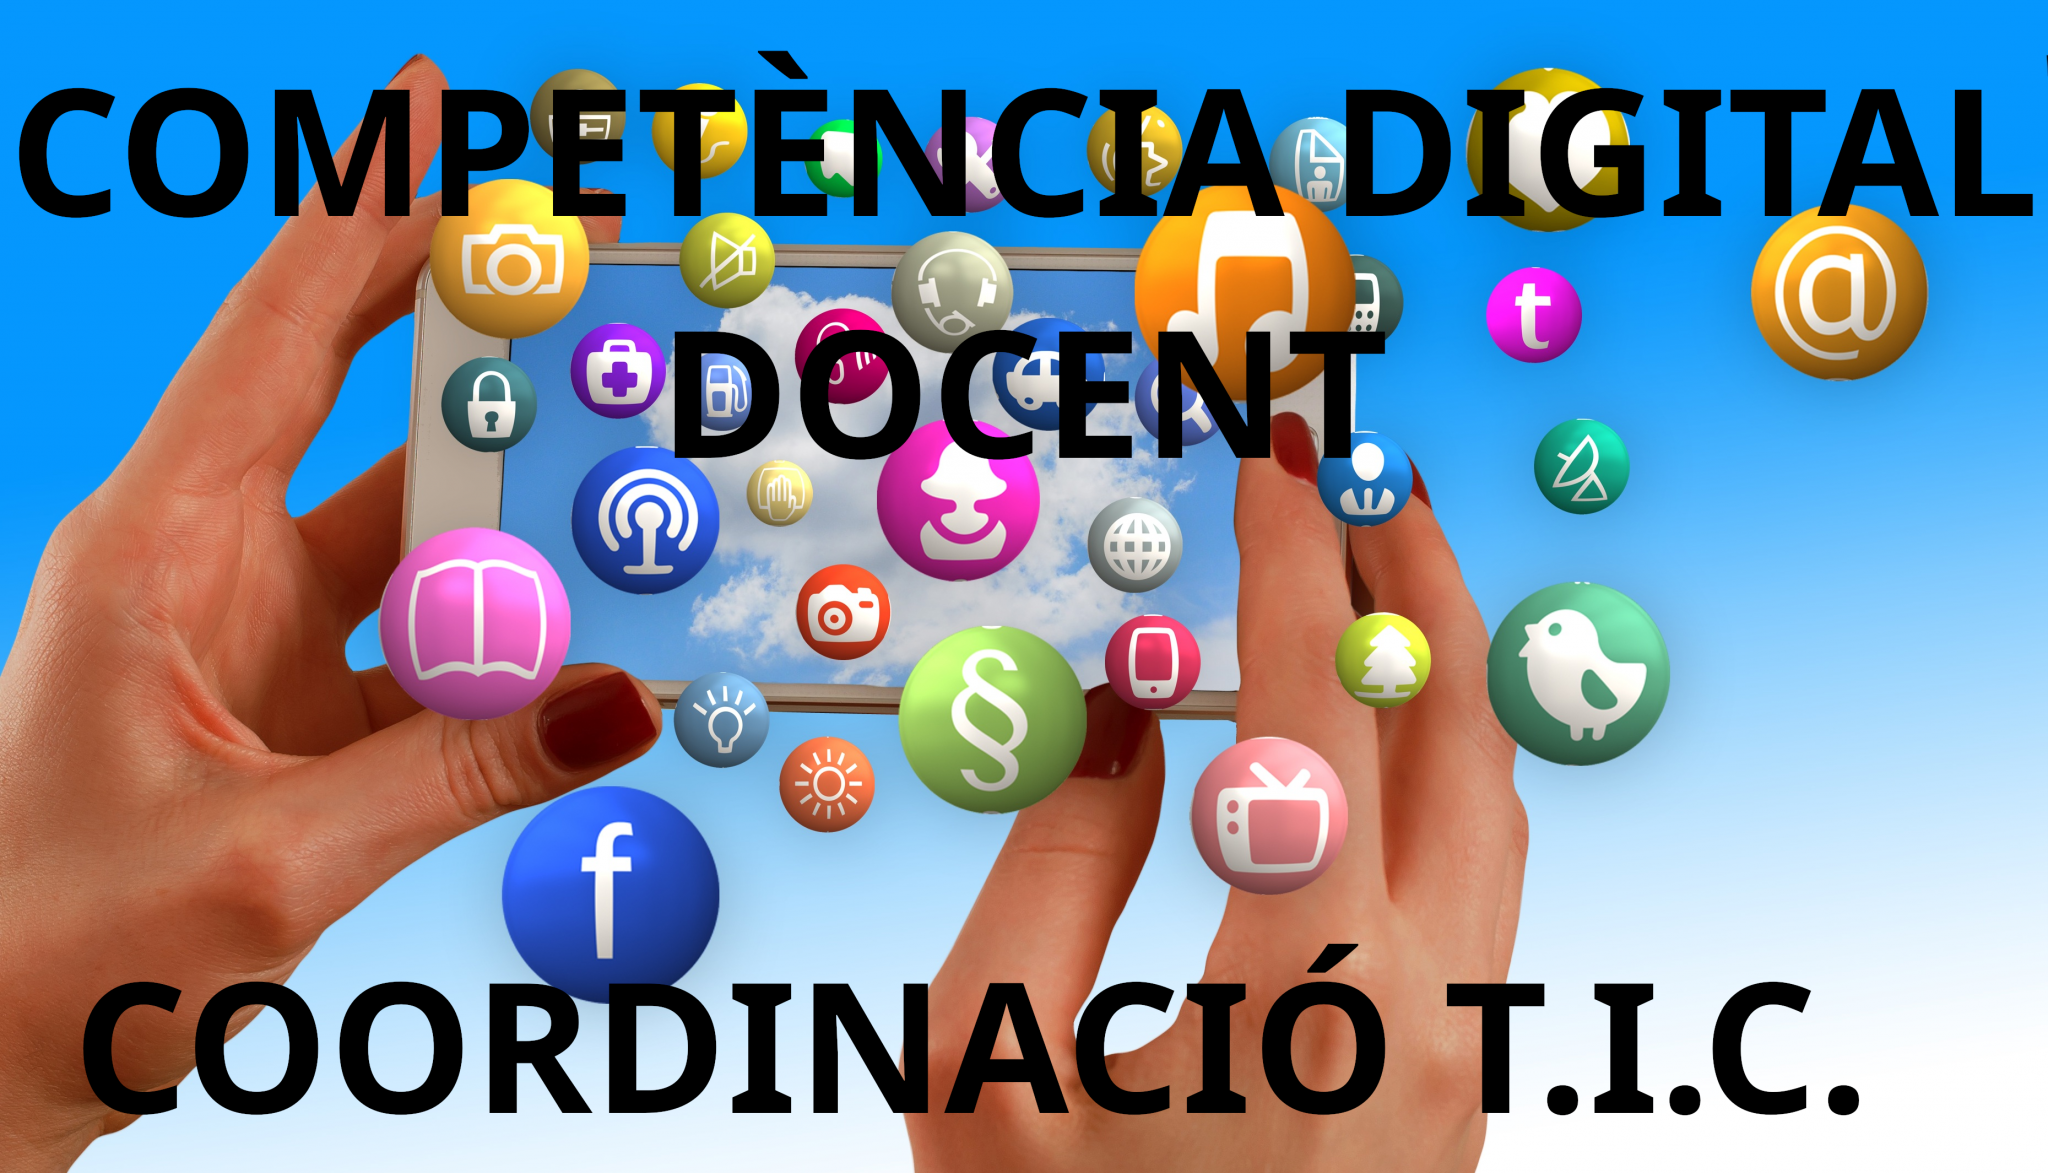 Competència Digital Docent - Coordinació TIC